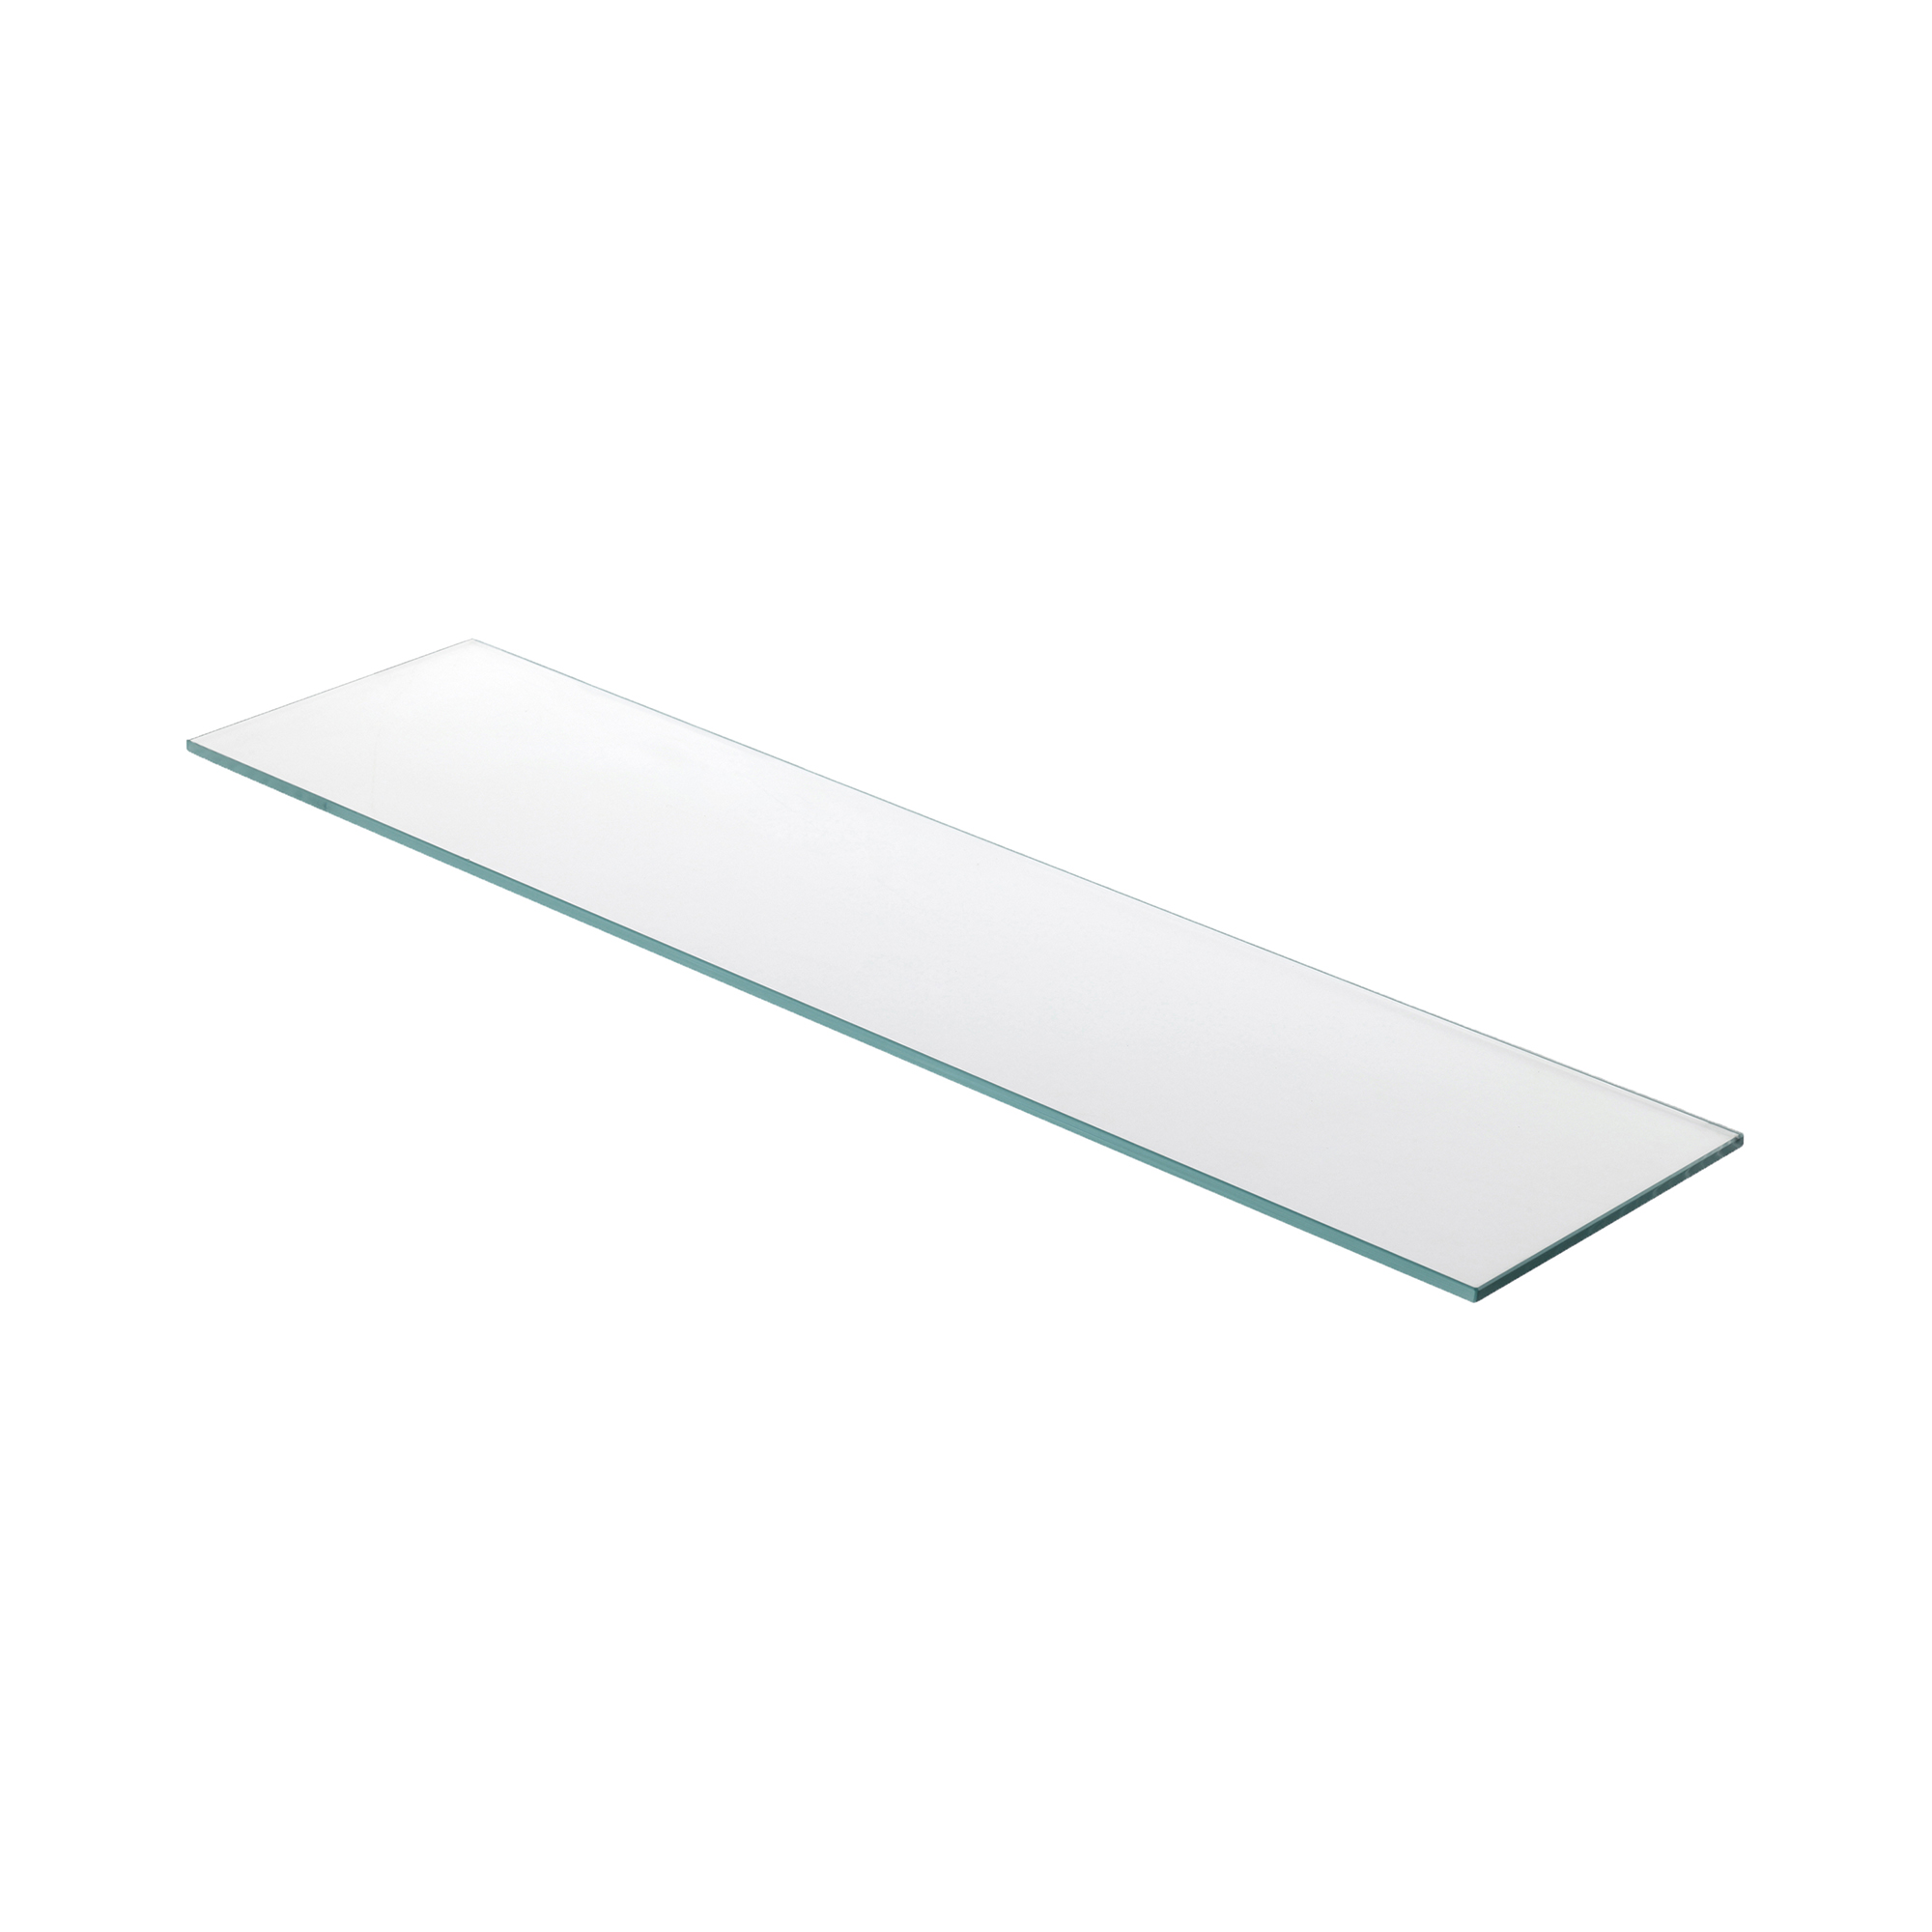 Estante de Cristal Transparente Medidas 600*6*150 mm | Espesor de la Balda: 6 mm | 1 Unidad